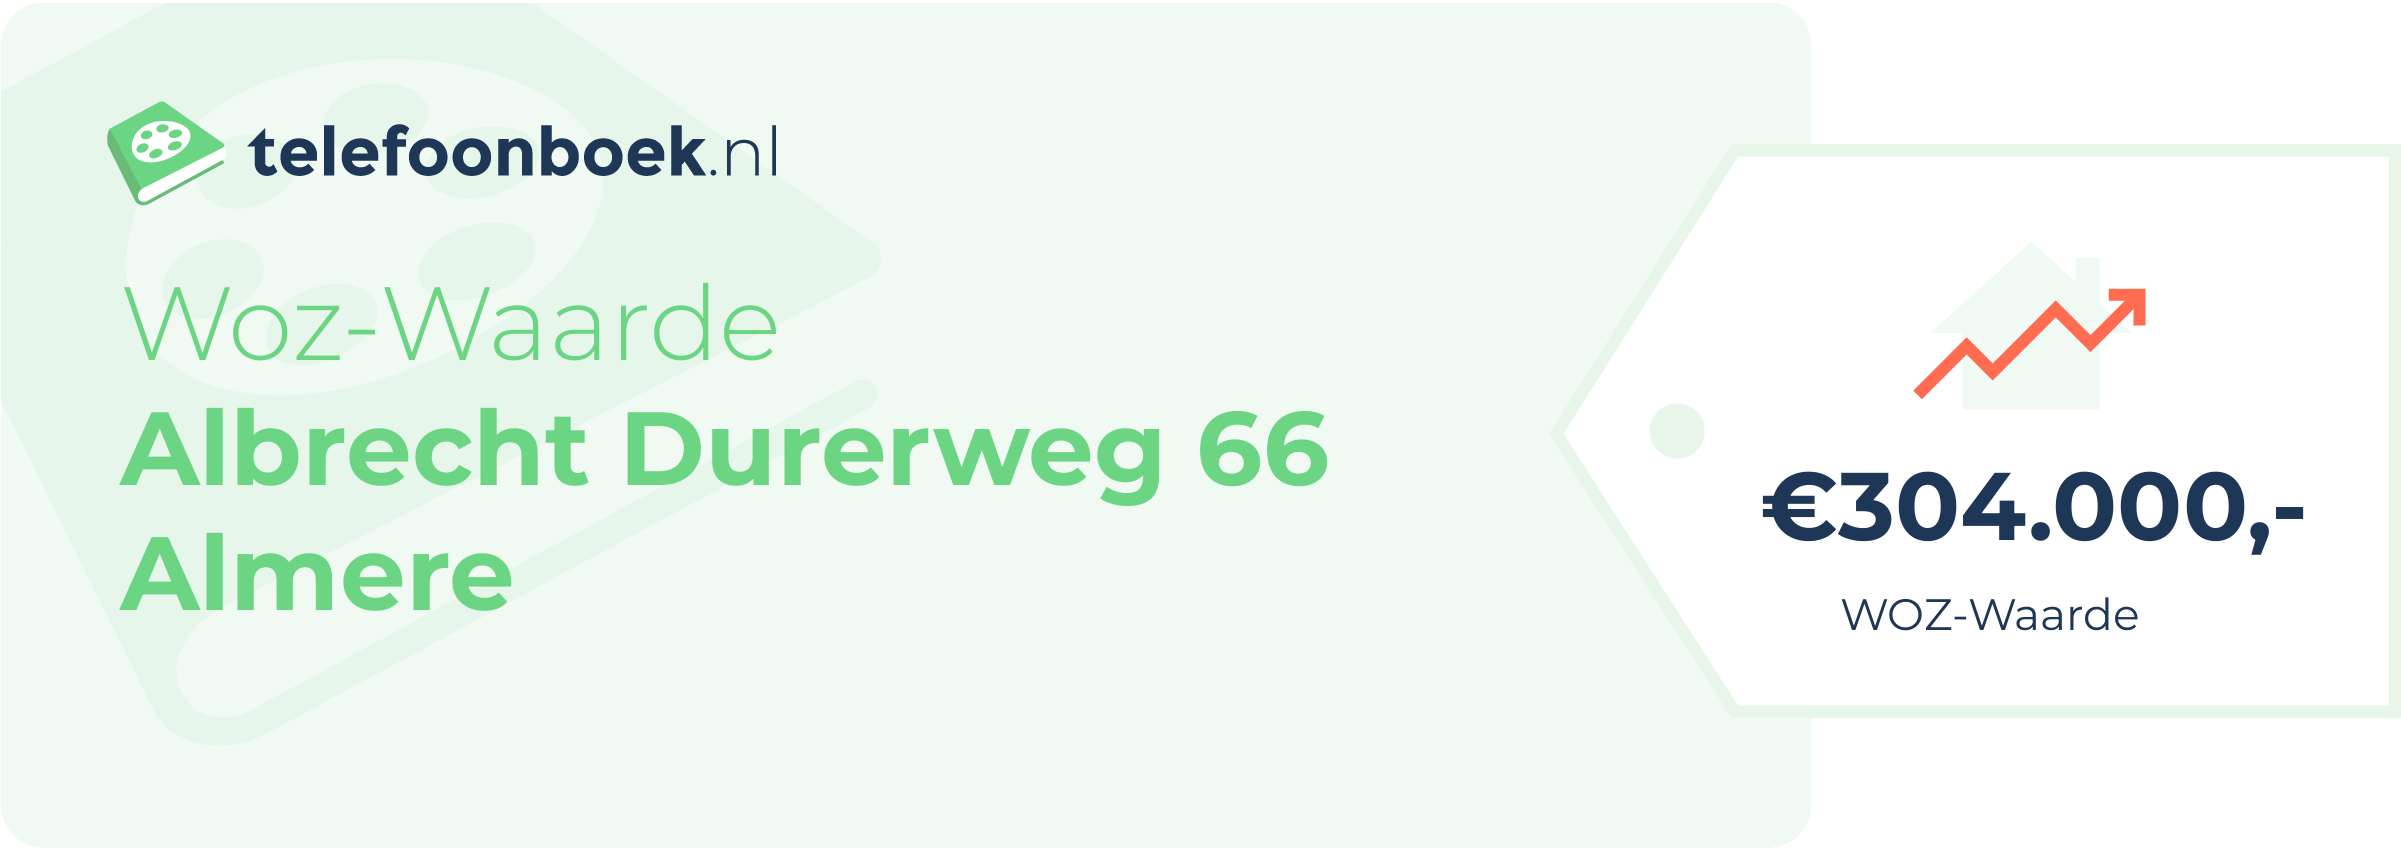 WOZ-waarde Albrecht Durerweg 66 Almere